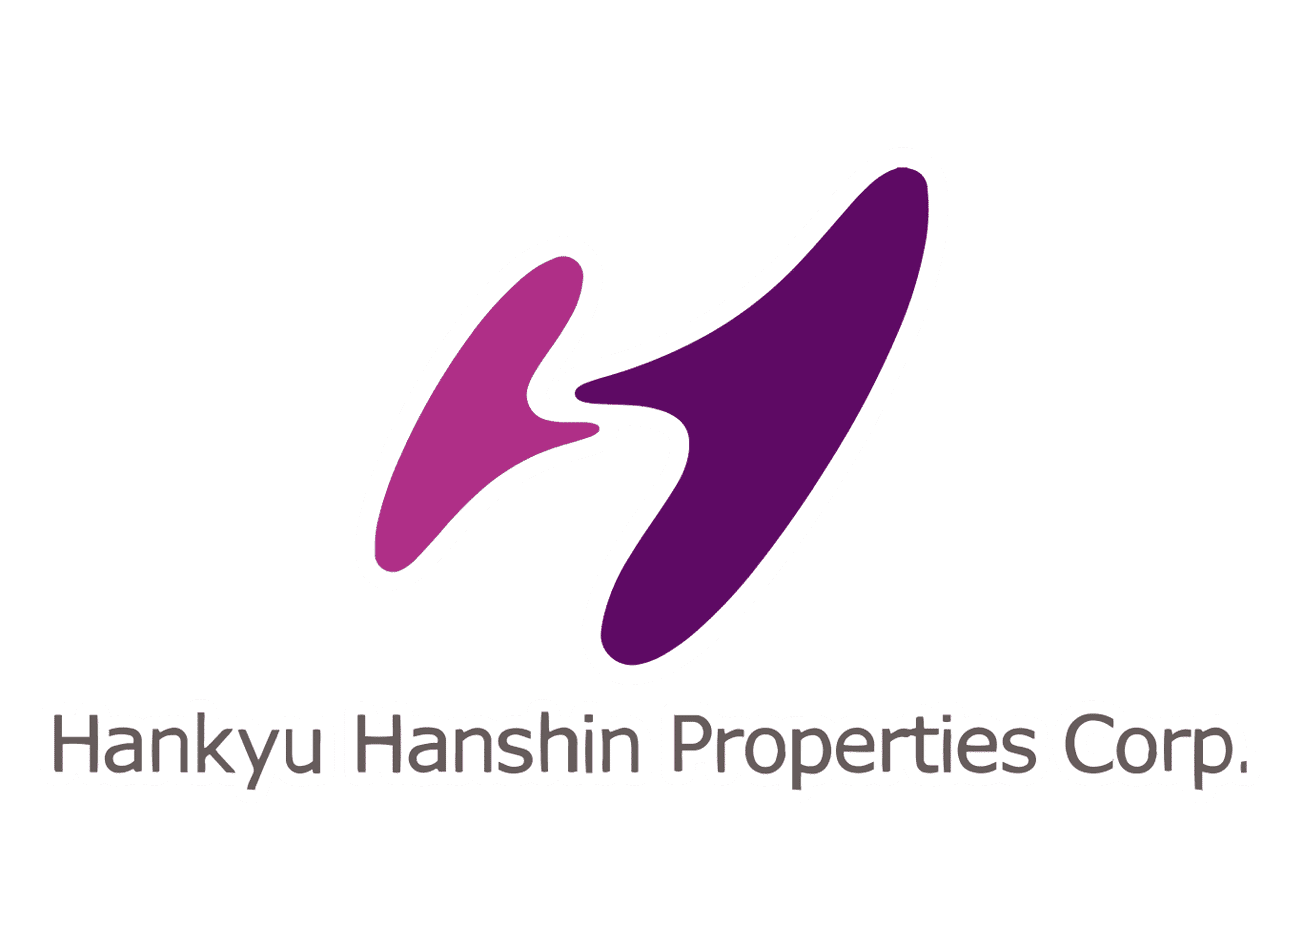 Hankyu Hanshin Properties Corp.